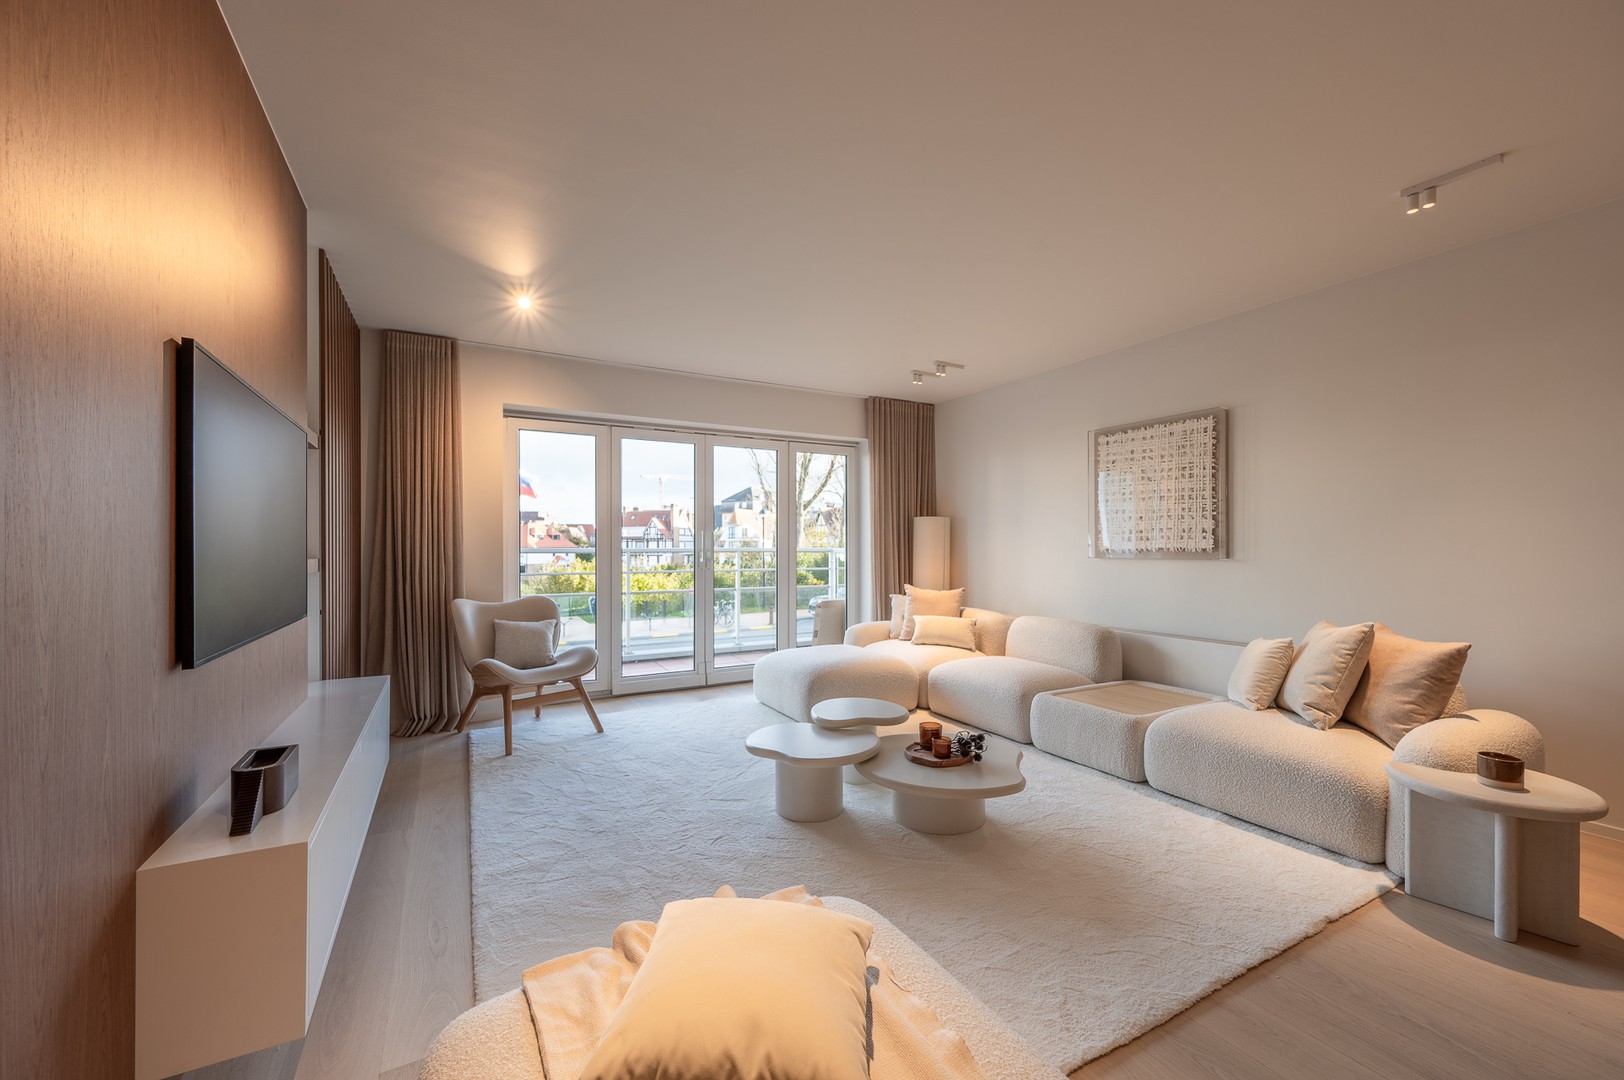 Uitzonderlijk appartement met prachtige zichten op de zee en de minigolf te Duinbergen te koop bij Immo Knokke Real Estate